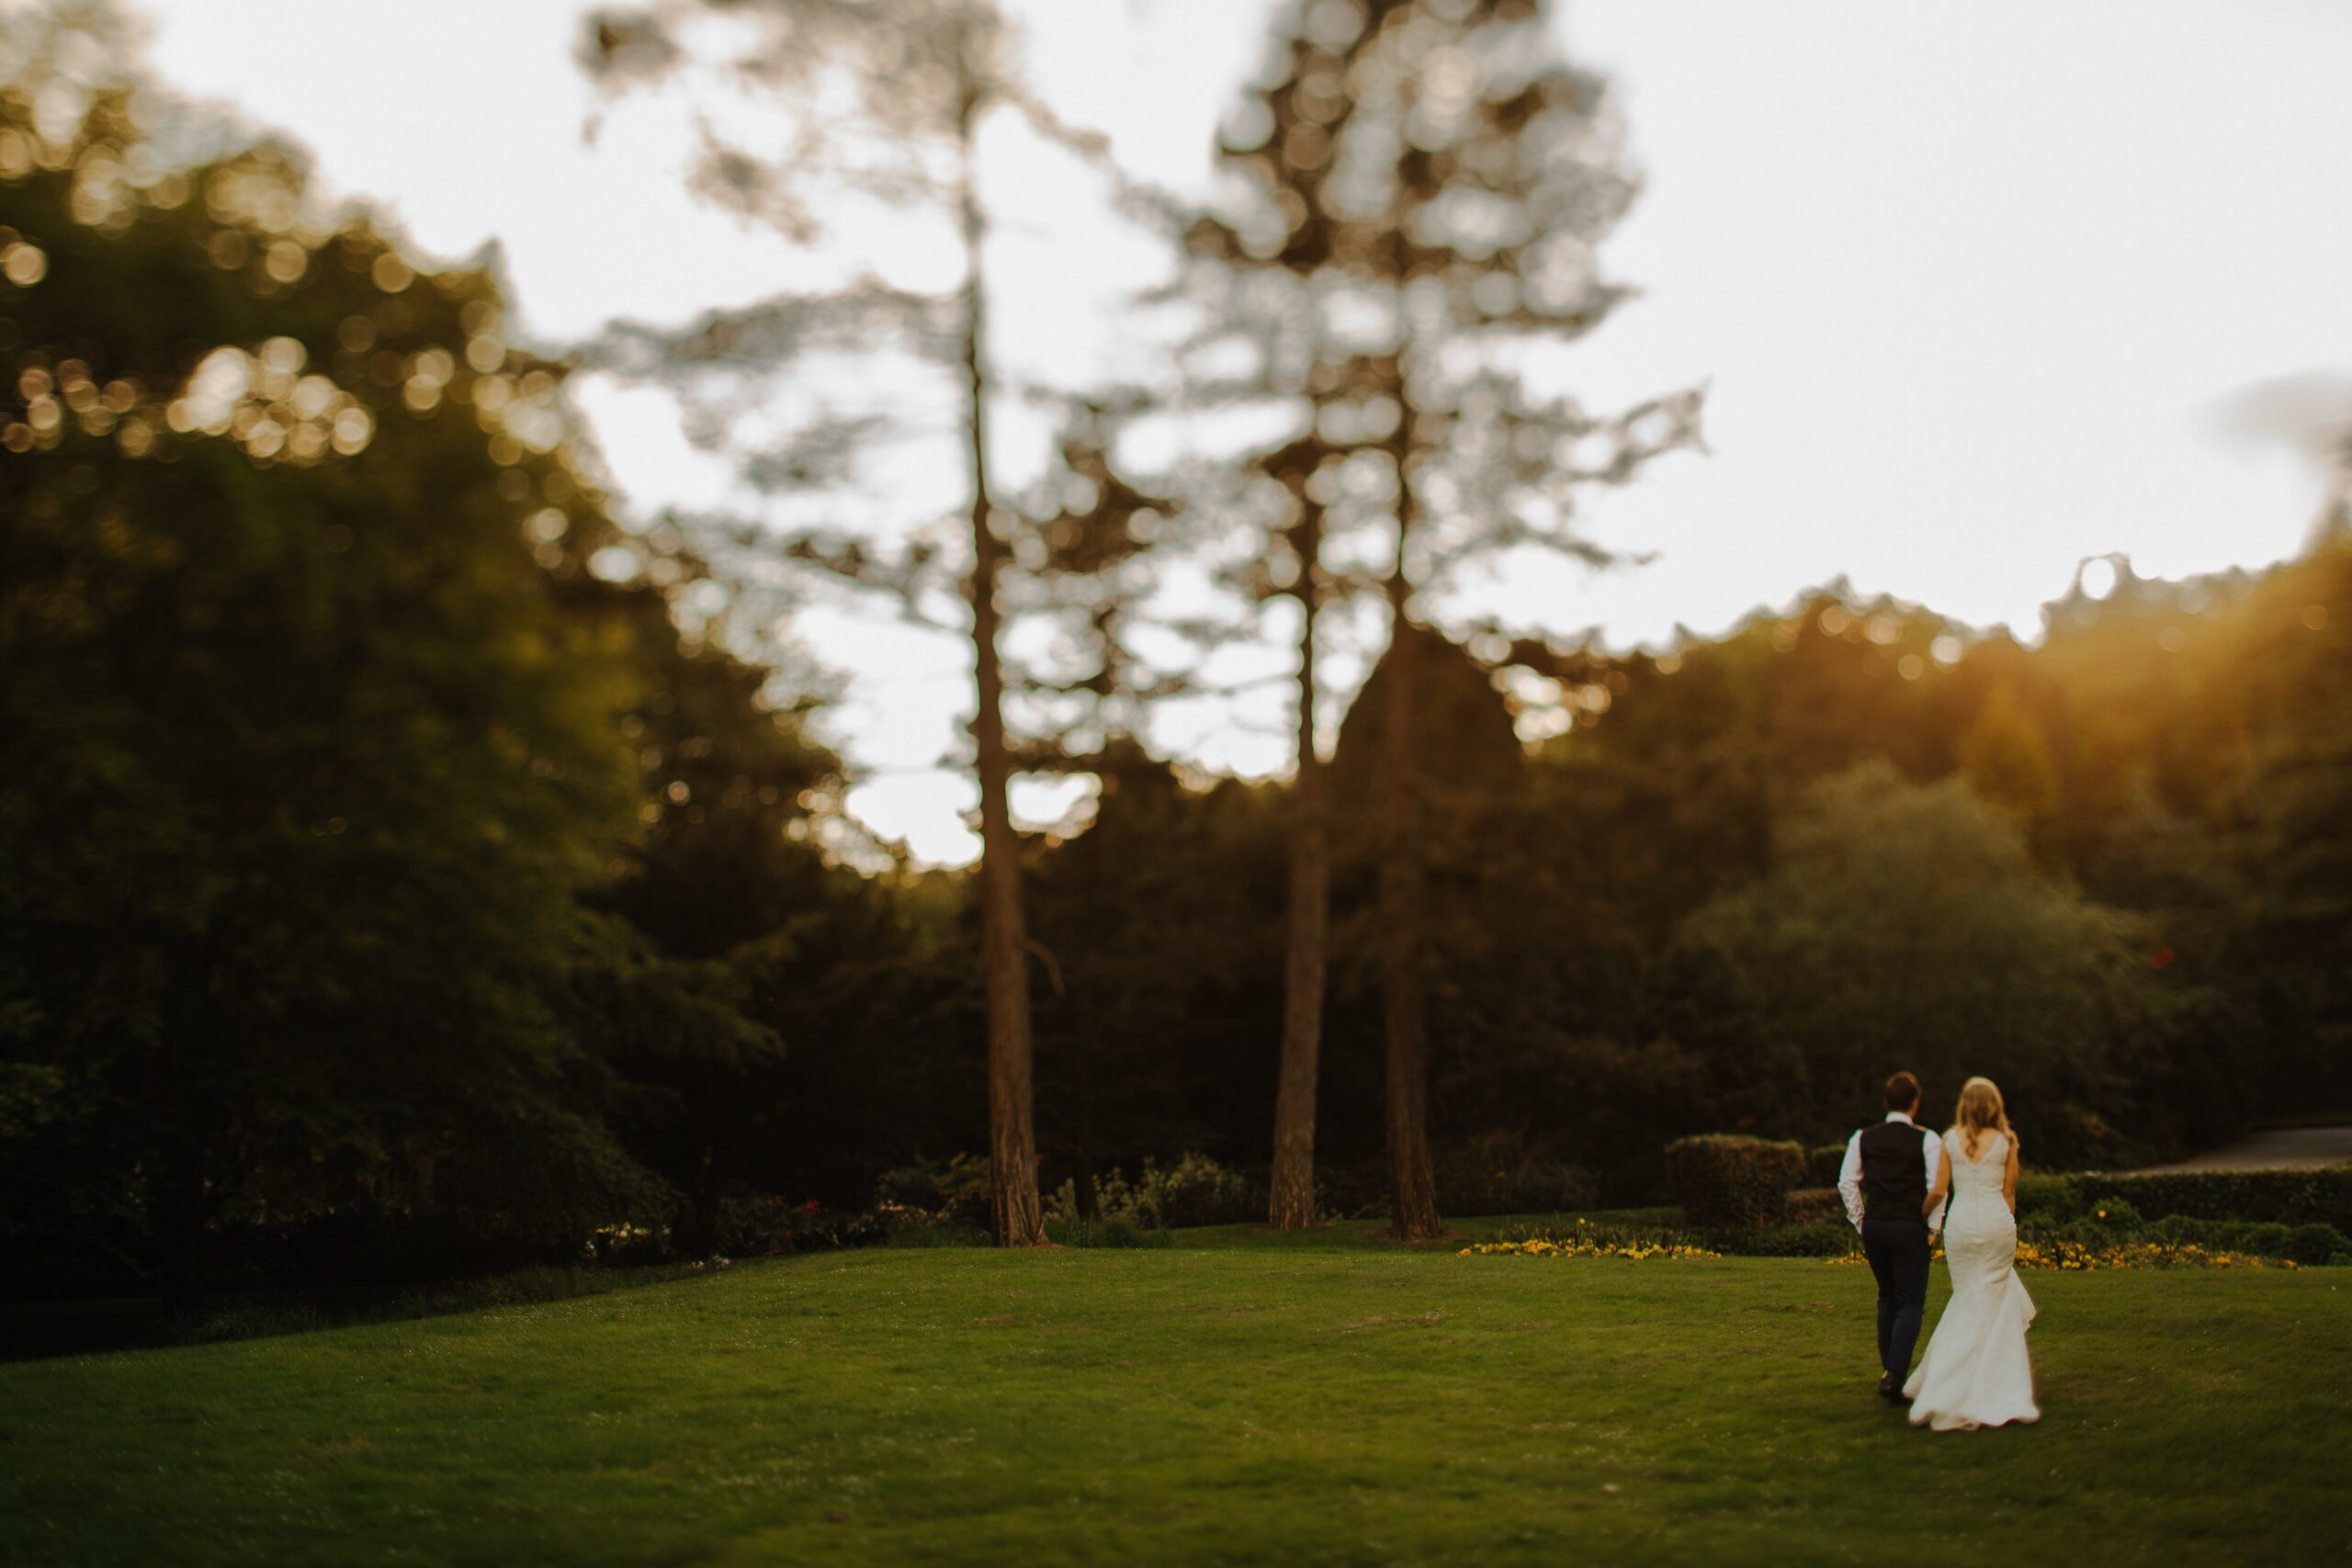 Die Braut und der Bräutigam gehen auf grünem Gras in Richtung der Bäume im Hintergrund.